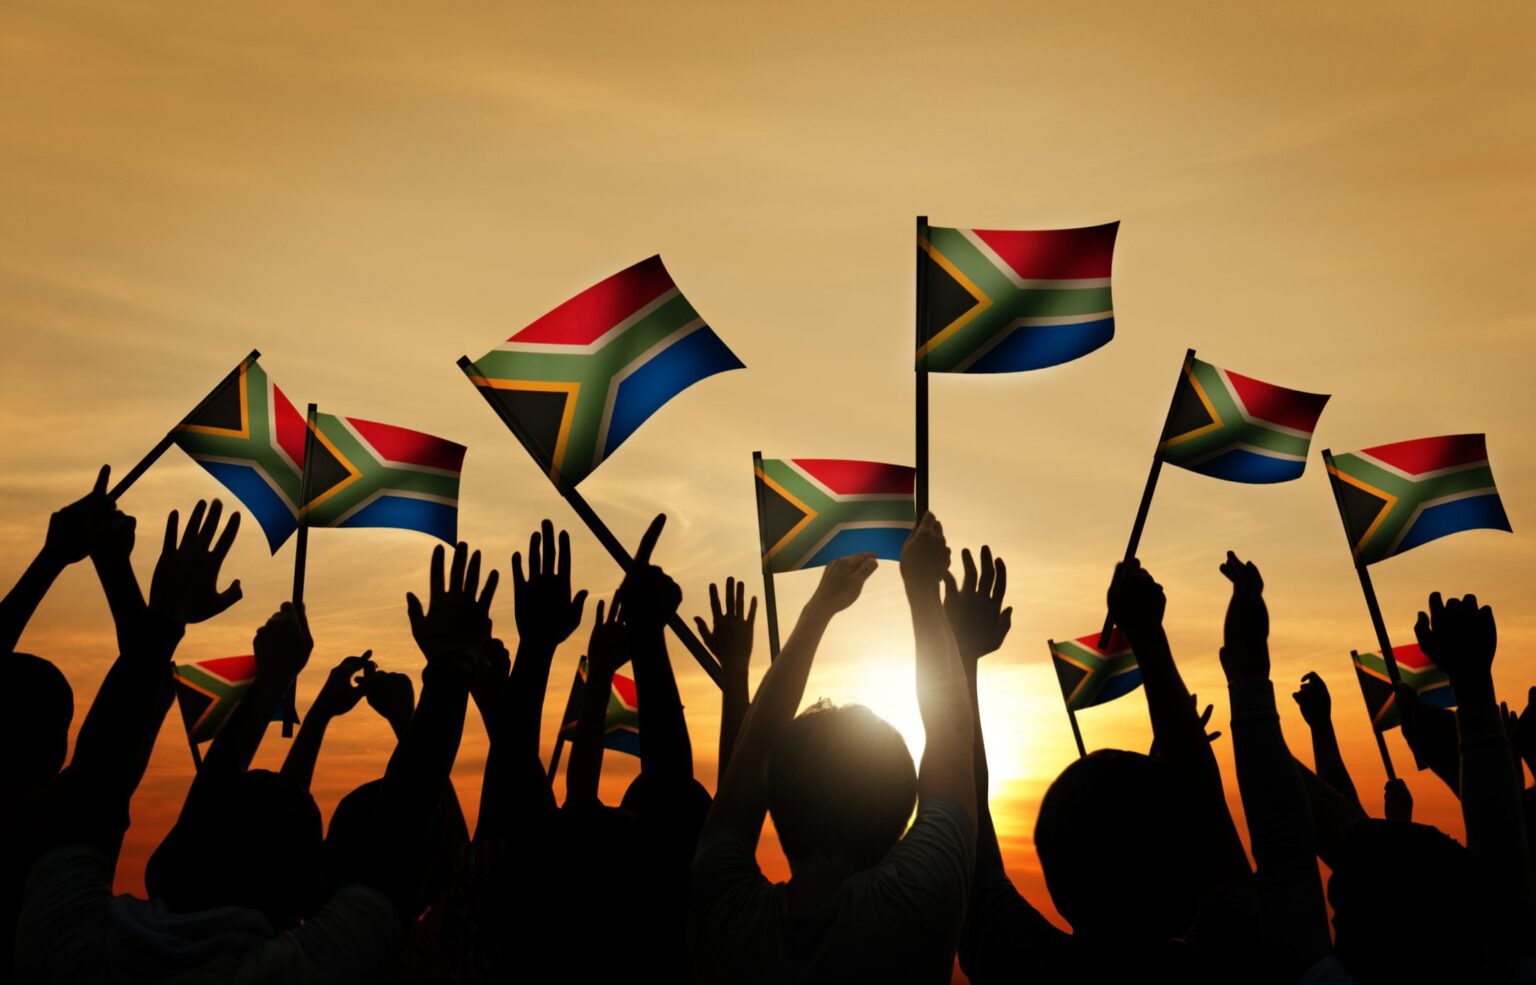 Die Suid-Afrikaanse vlag